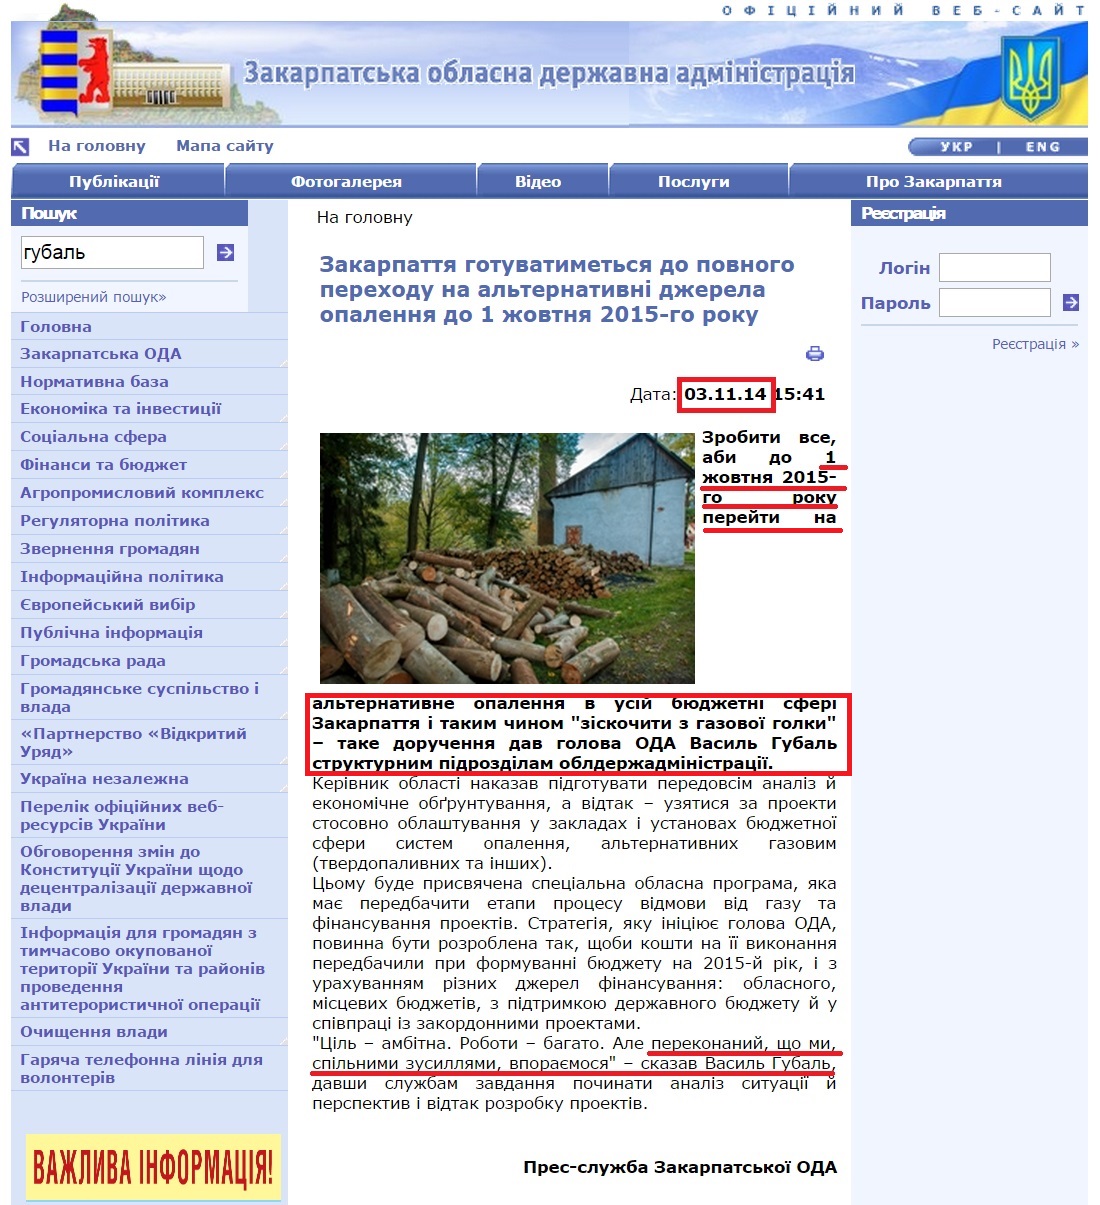 http://www.carpathia.gov.ua/ua/publication/content/10284.htm?lightWords=%D0%B3%D1%83%D0%B1%D0%B0%D0%BB%D1%8C